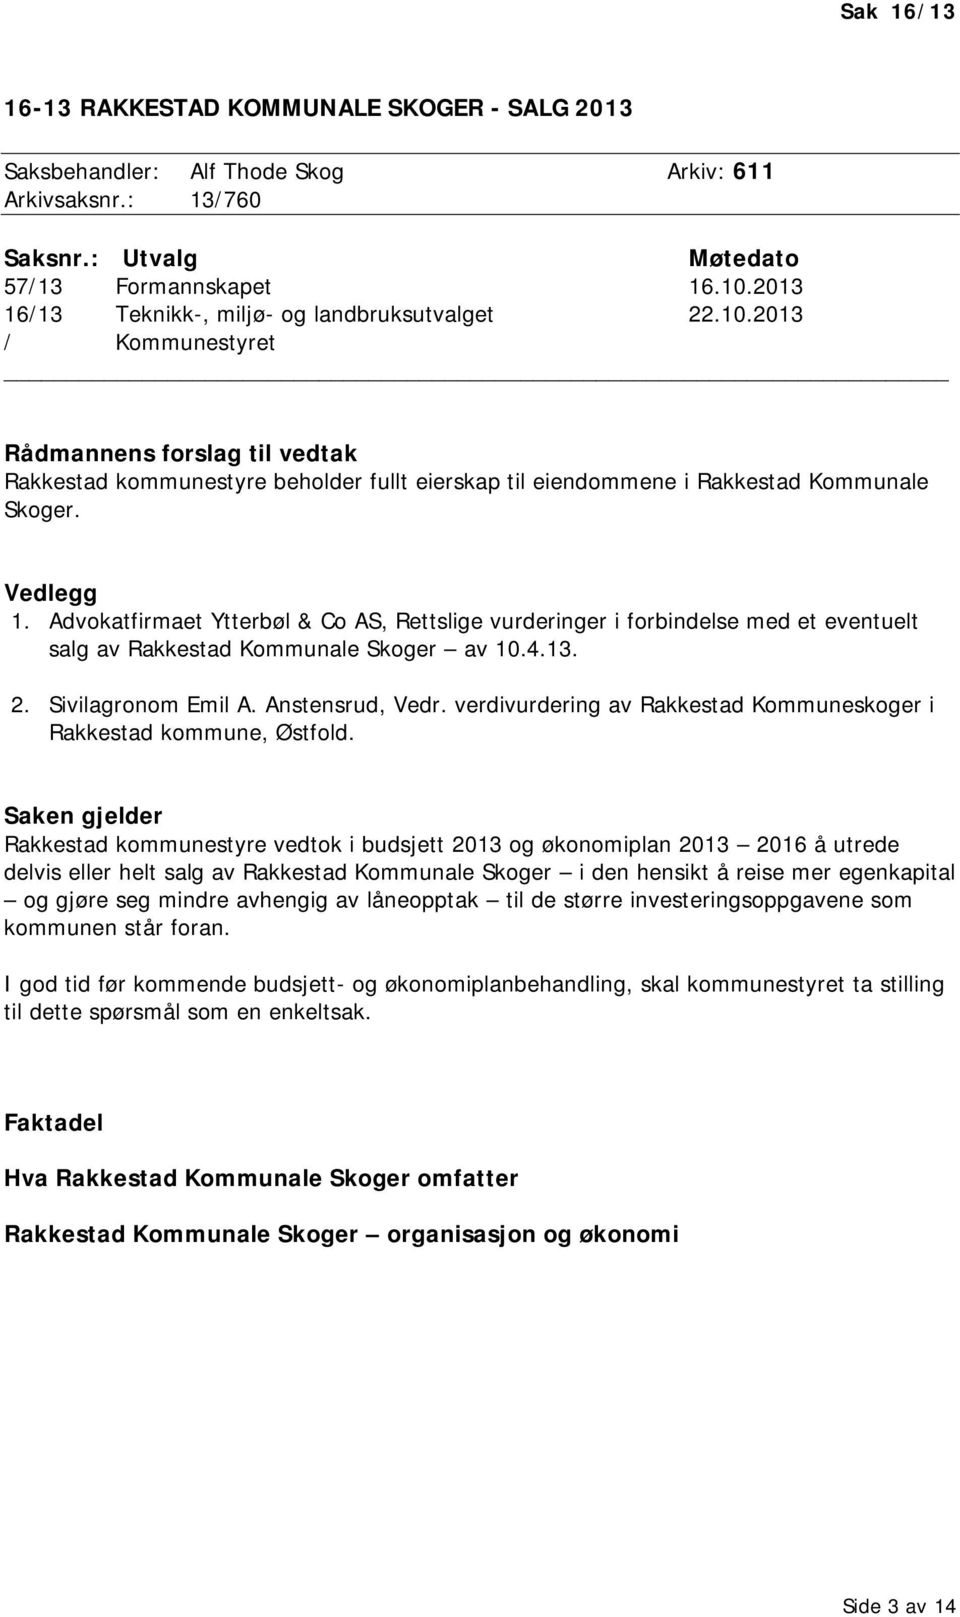 Vedlegg 1. Advokatfirmaet Ytterbøl & Co AS, Rettslige vurderinger i forbindelse med et eventuelt salg av Rakkestad Kommunale Skoger av 10.4.13. 2. Sivilagronom Emil A. Anstensrud, Vedr.